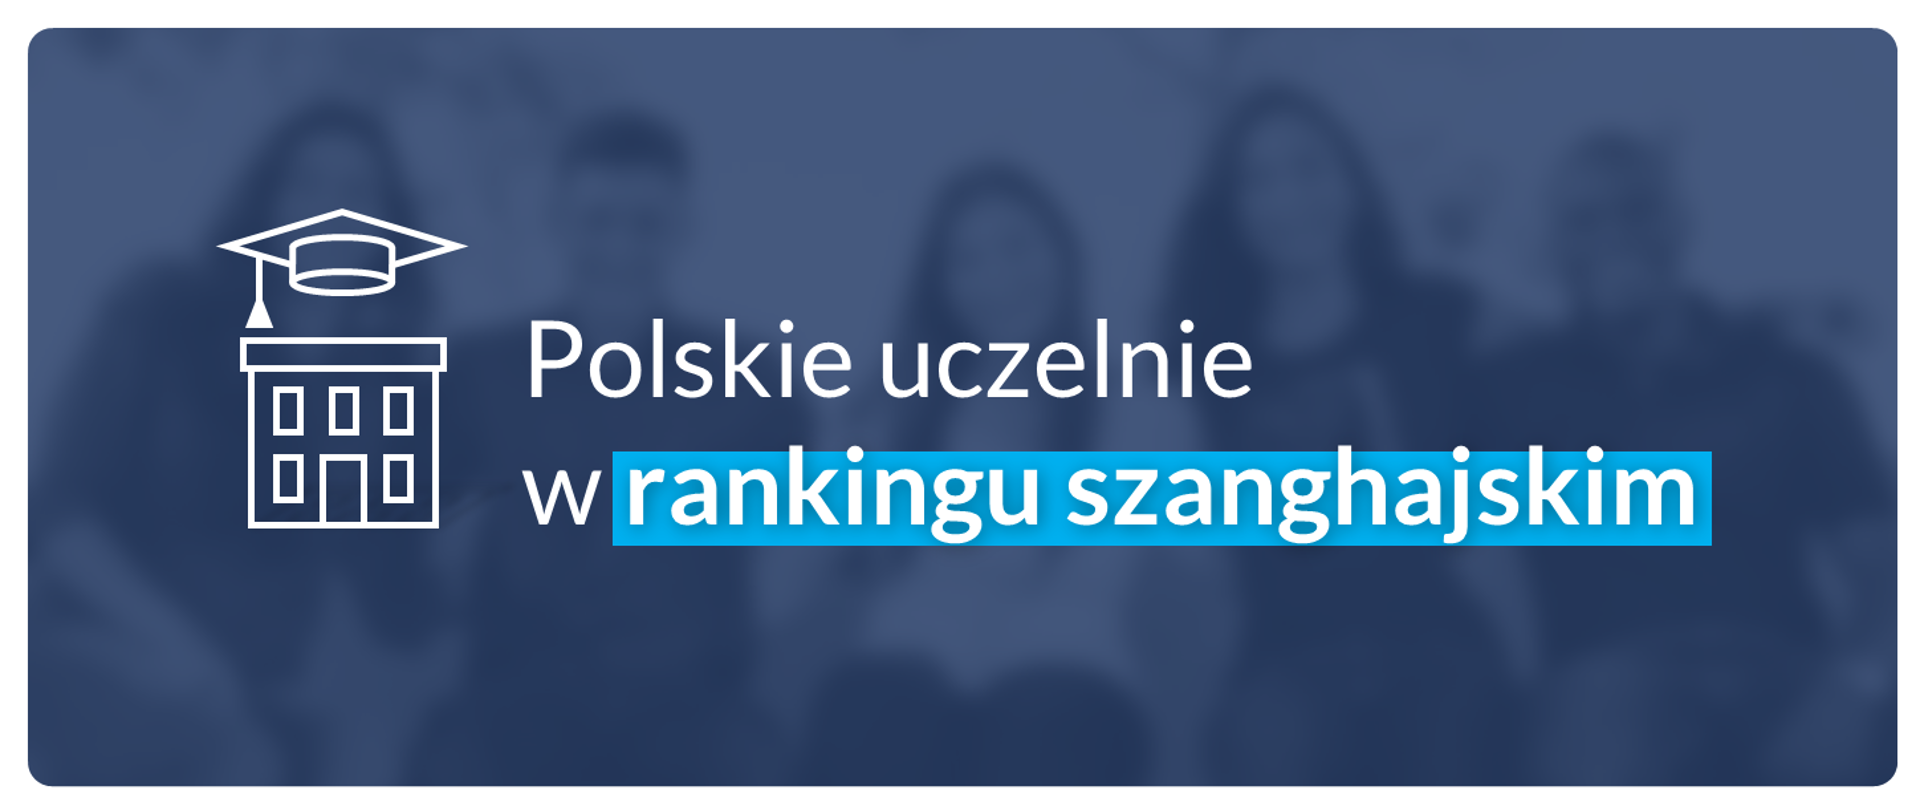 Grafika - na niebieskim tle stylizowany budynek i napis Polskie uczelnie w rankingu szanghajskim.